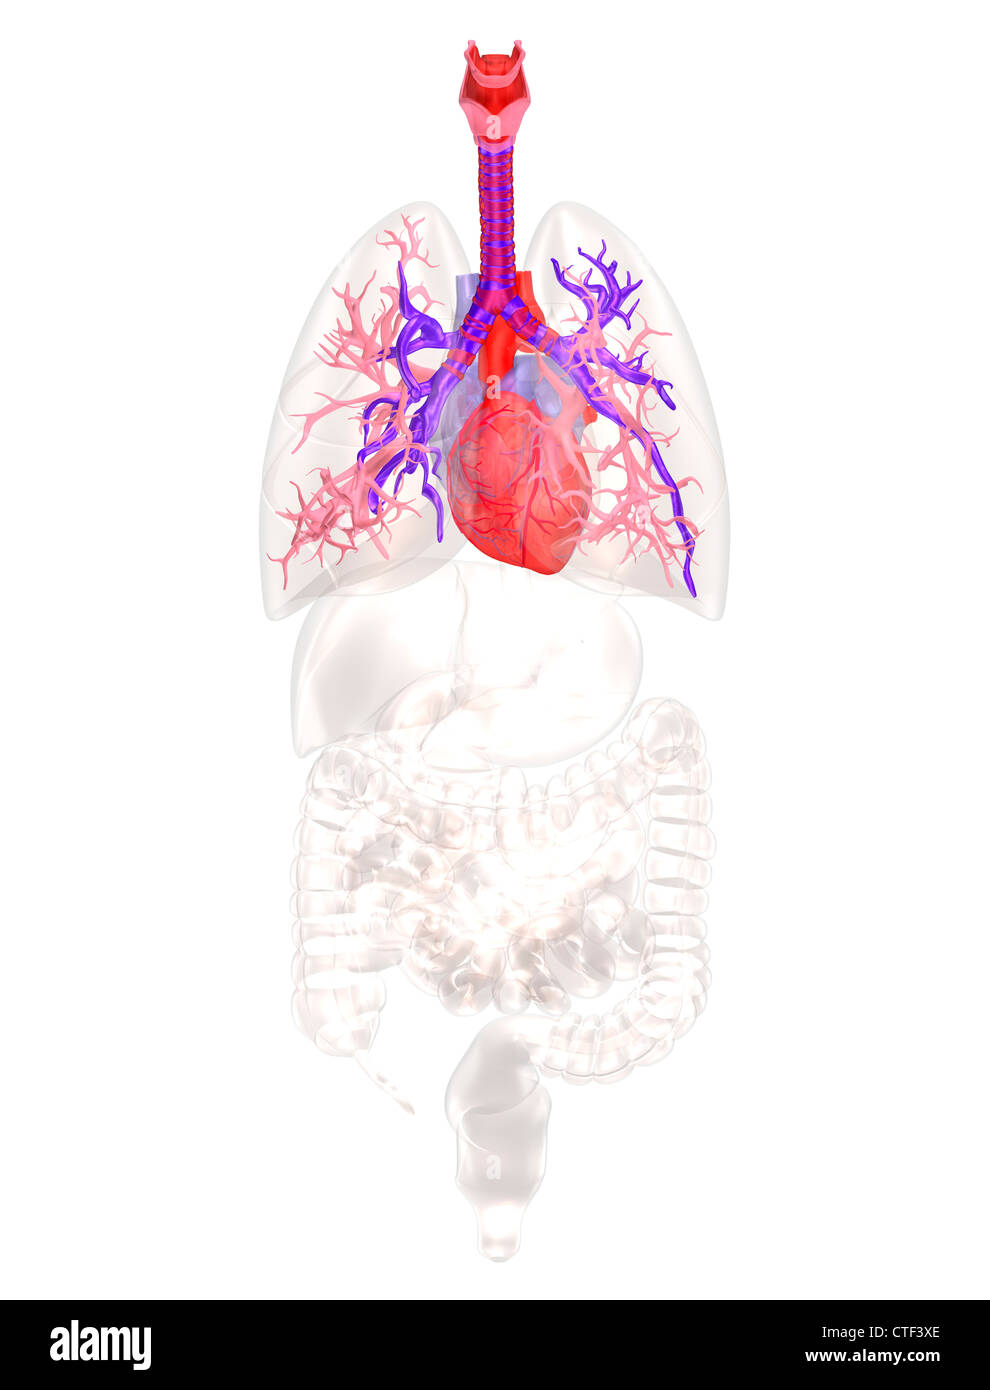 Biomedizinischen Abbildung zeigt menschliche Herz Stockfoto